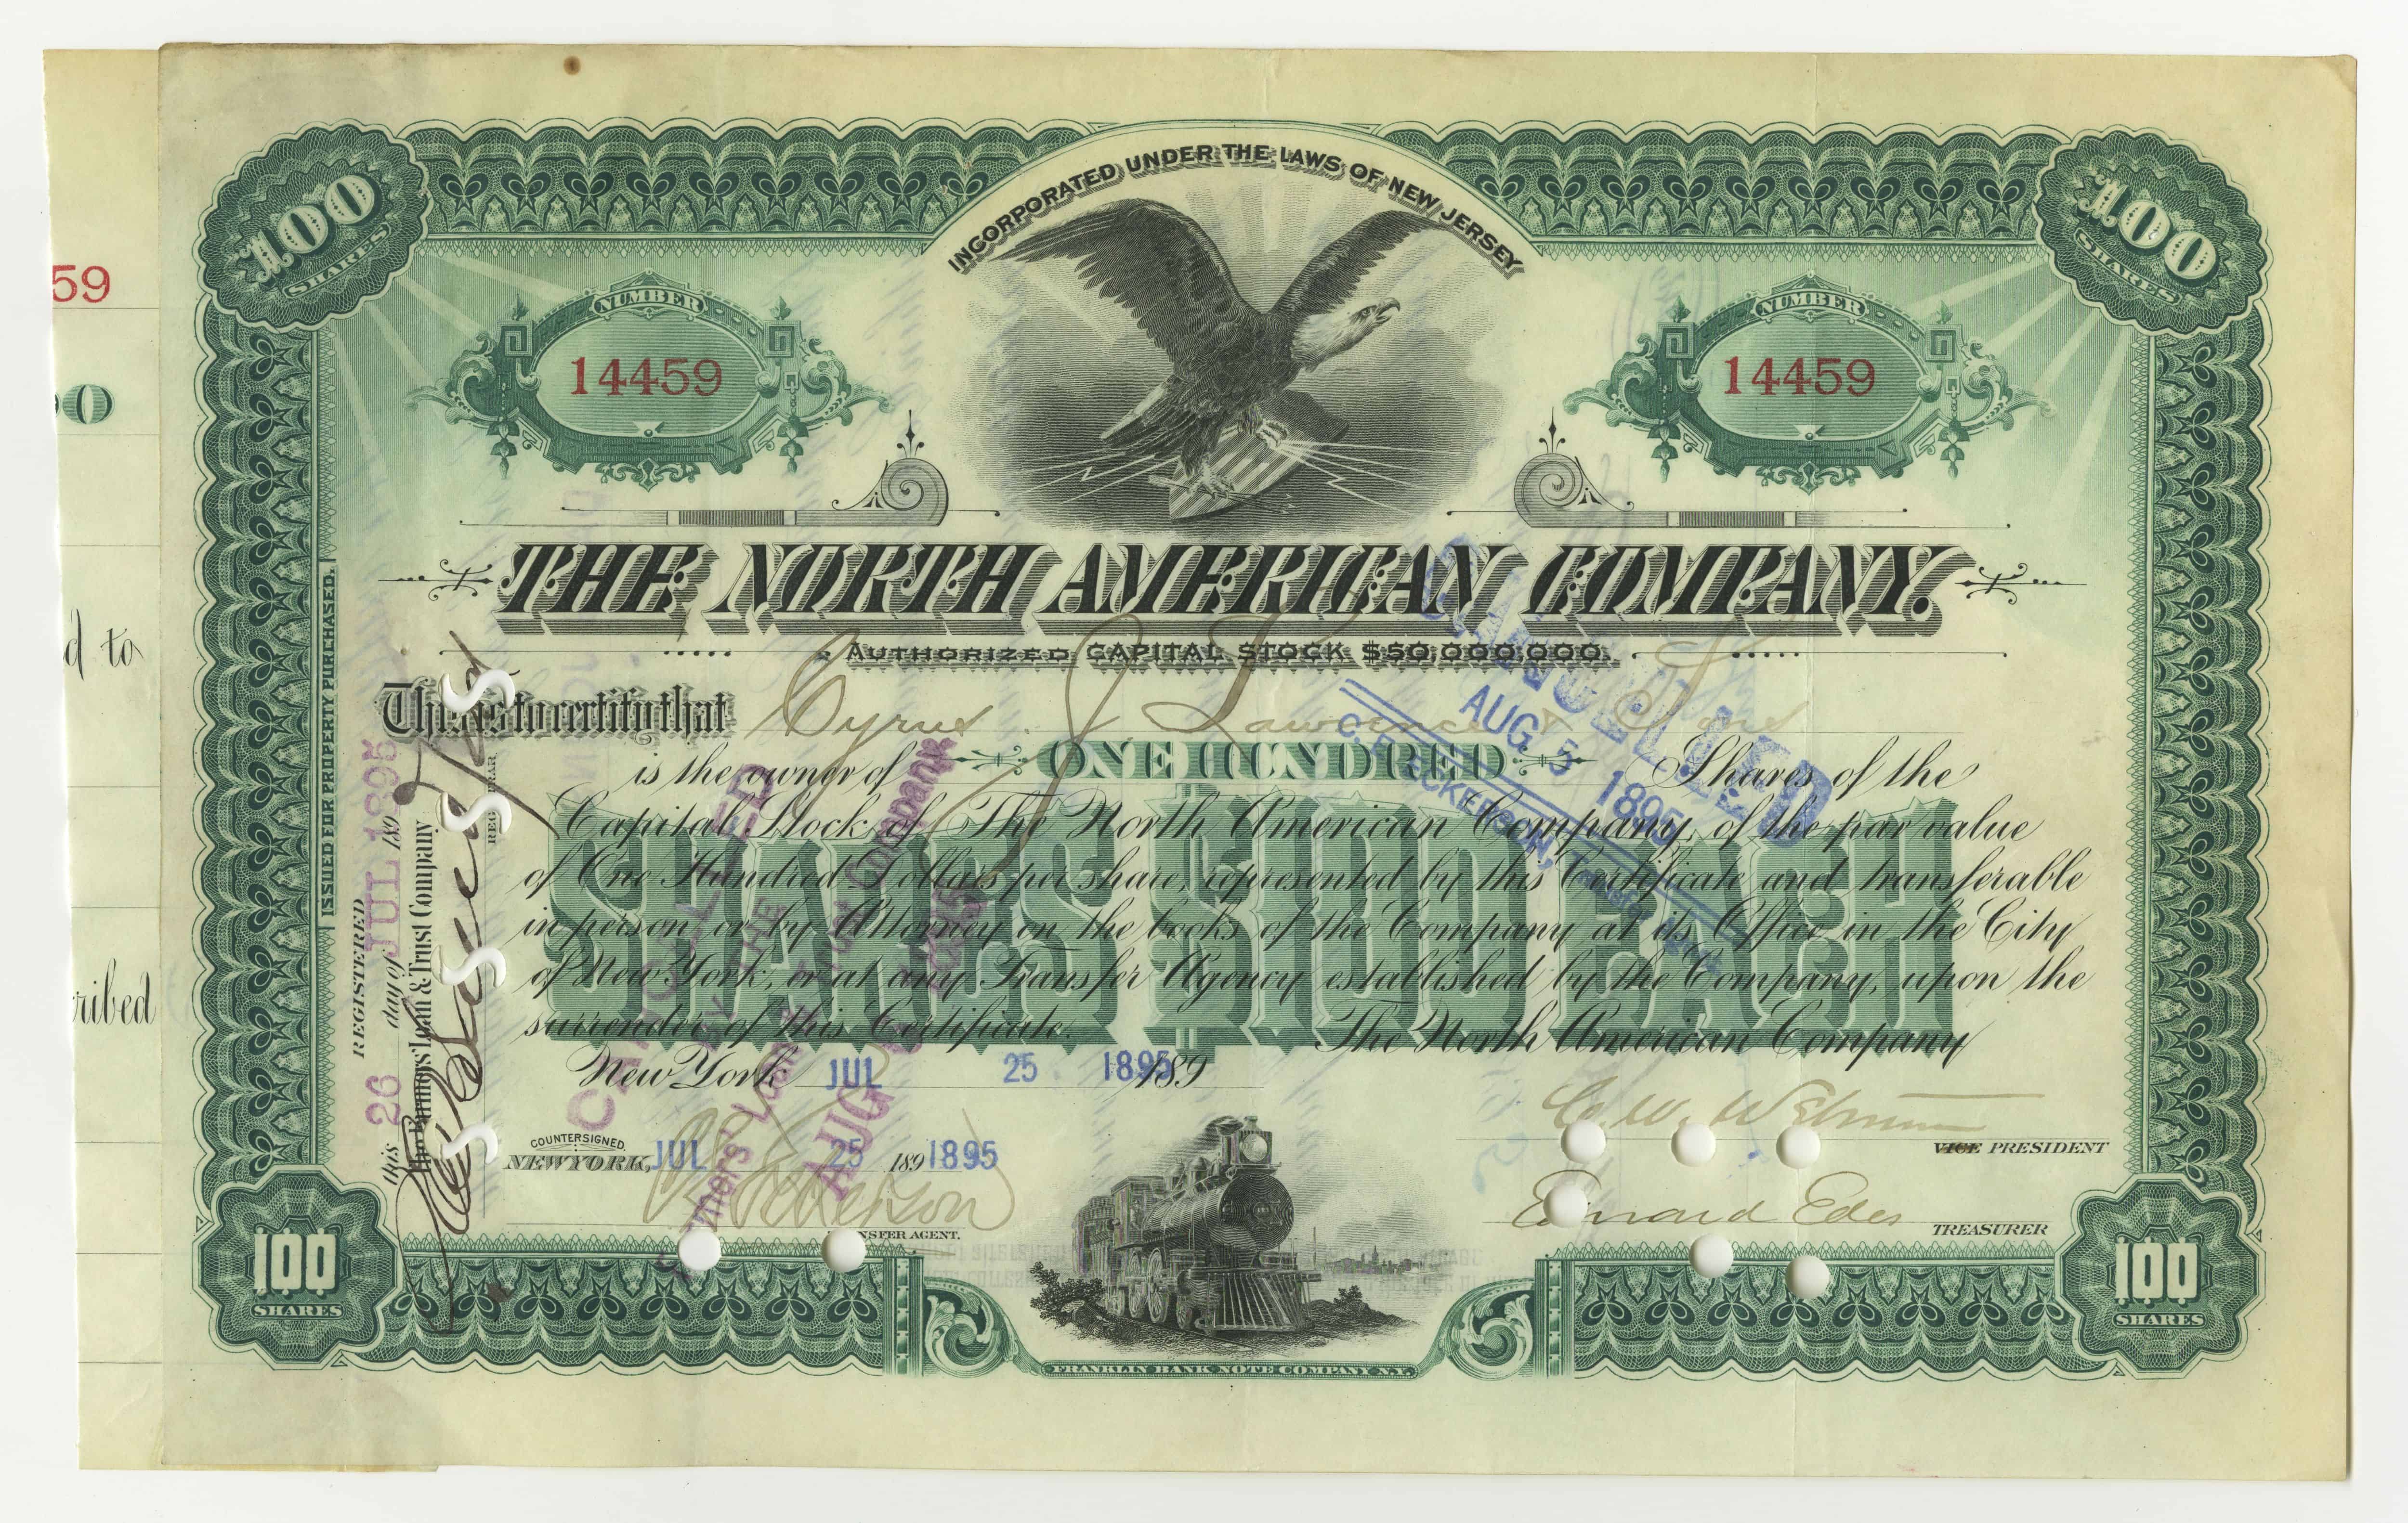 100 akcji spółki The North American Company z dnia 25 lipca 1895 roku